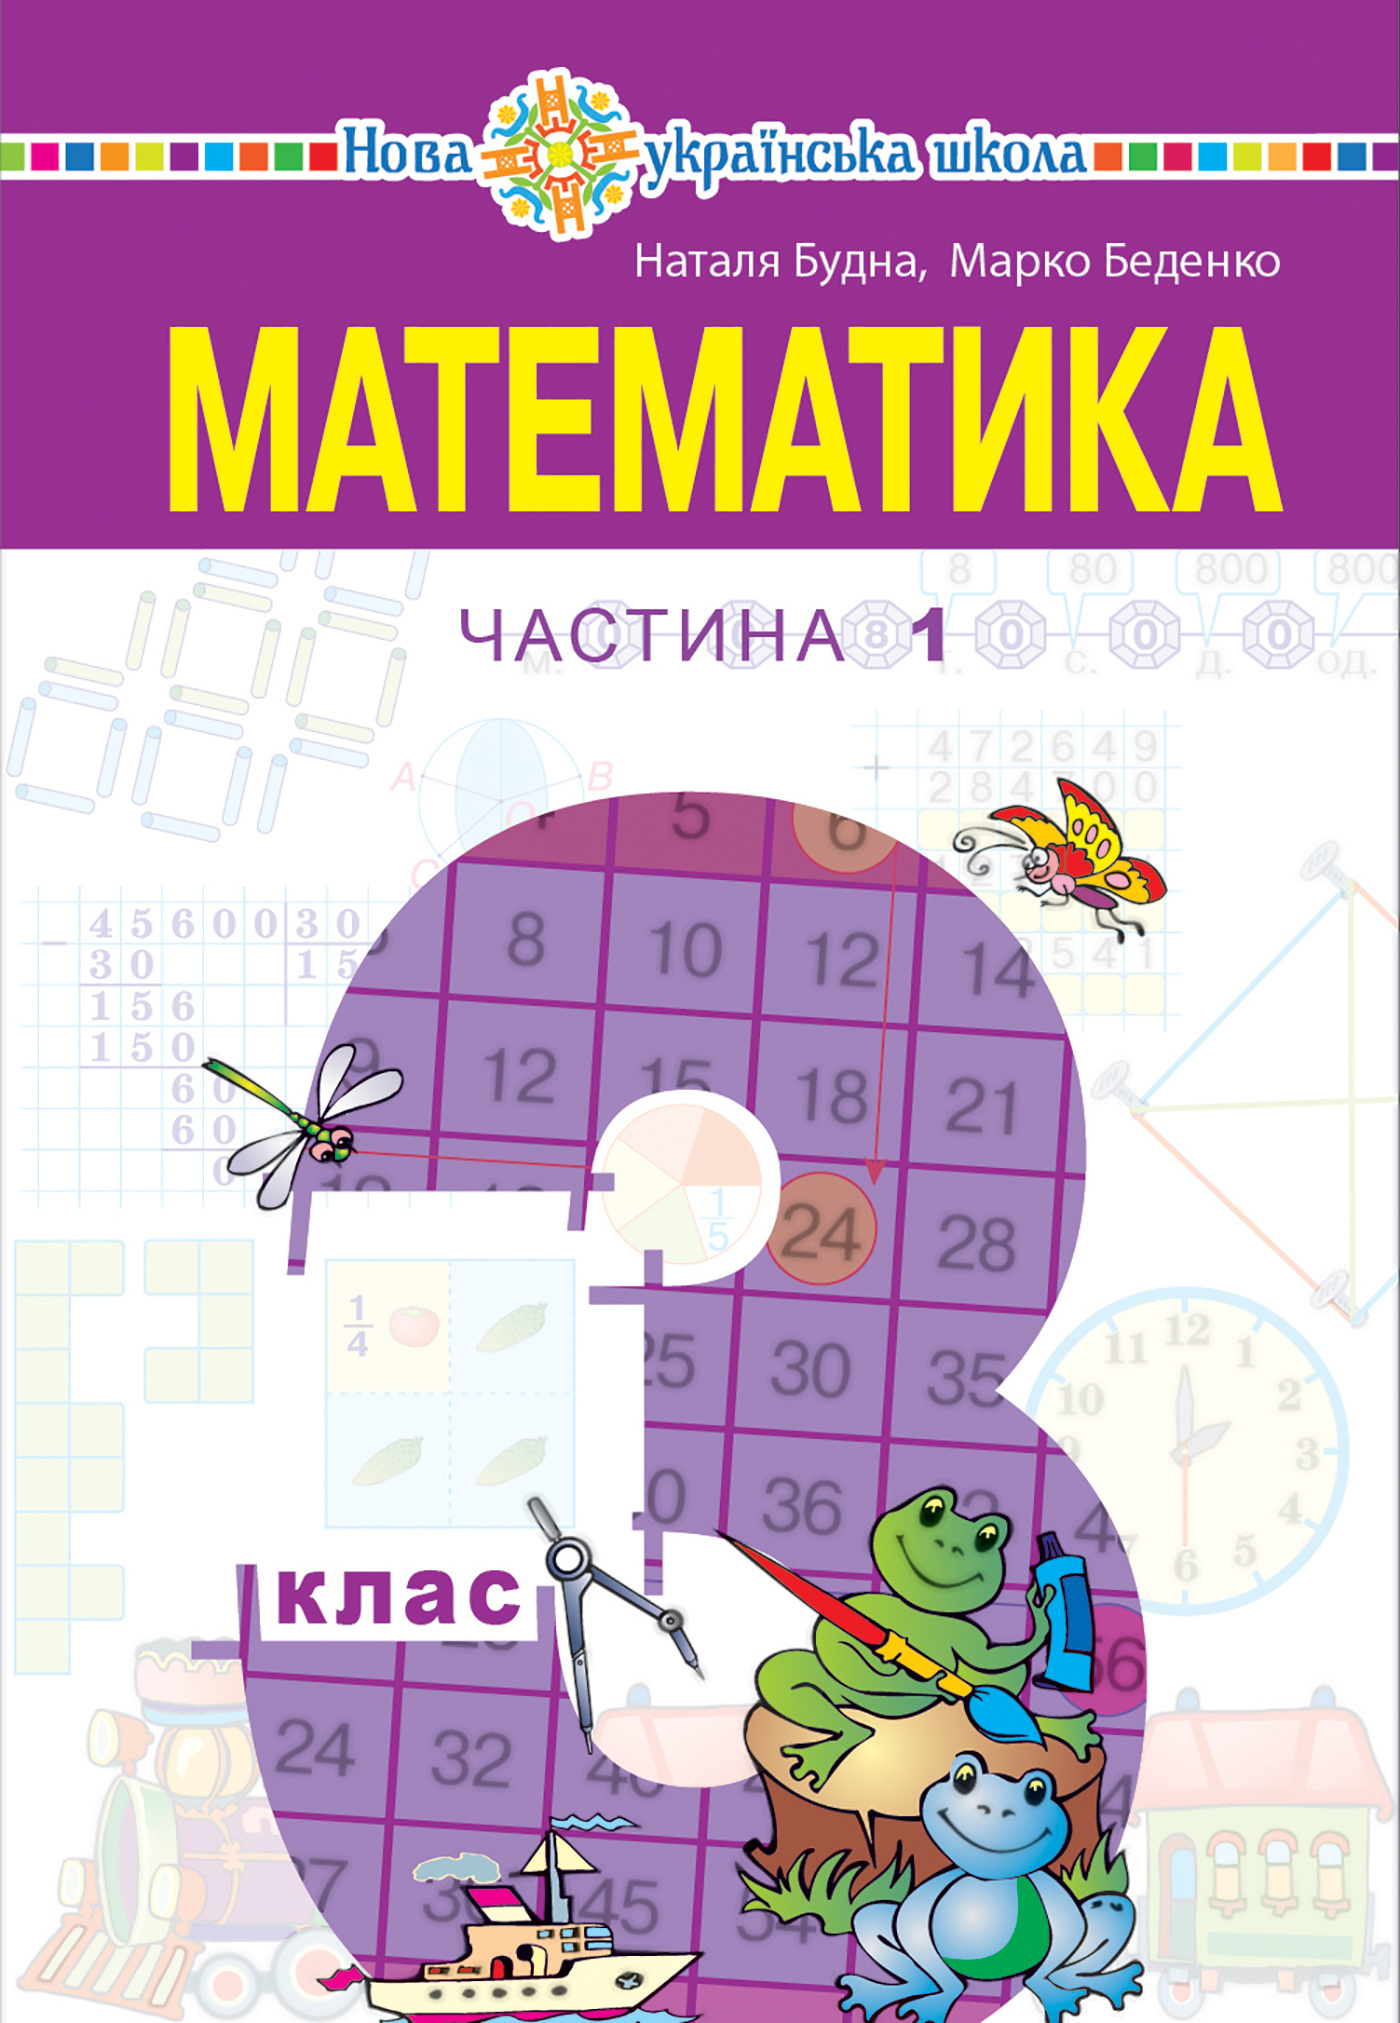 "Математика" підручник для 3 класу закладів загальної середньої освіти (у 2-х частинах), Частина 1  (2020 год). Автор — Наталія Будна. 